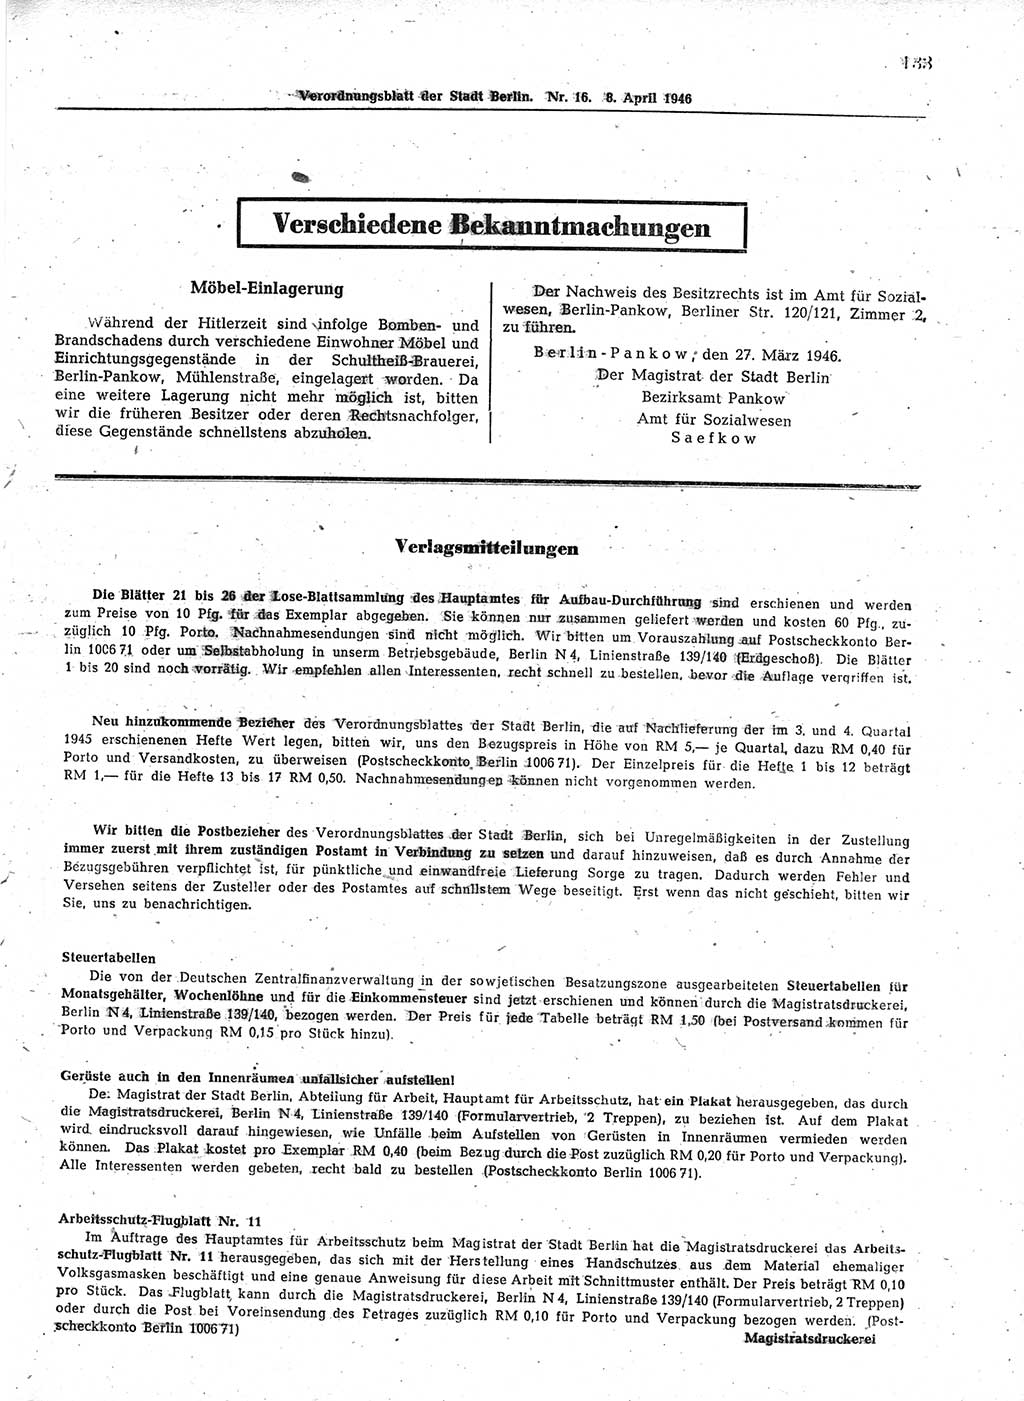 Verordnungsblatt (VOBl.) der Stadt Berlin, für Groß-Berlin 1946, Seite 133 (VOBl. Bln. 1946, S. 133)